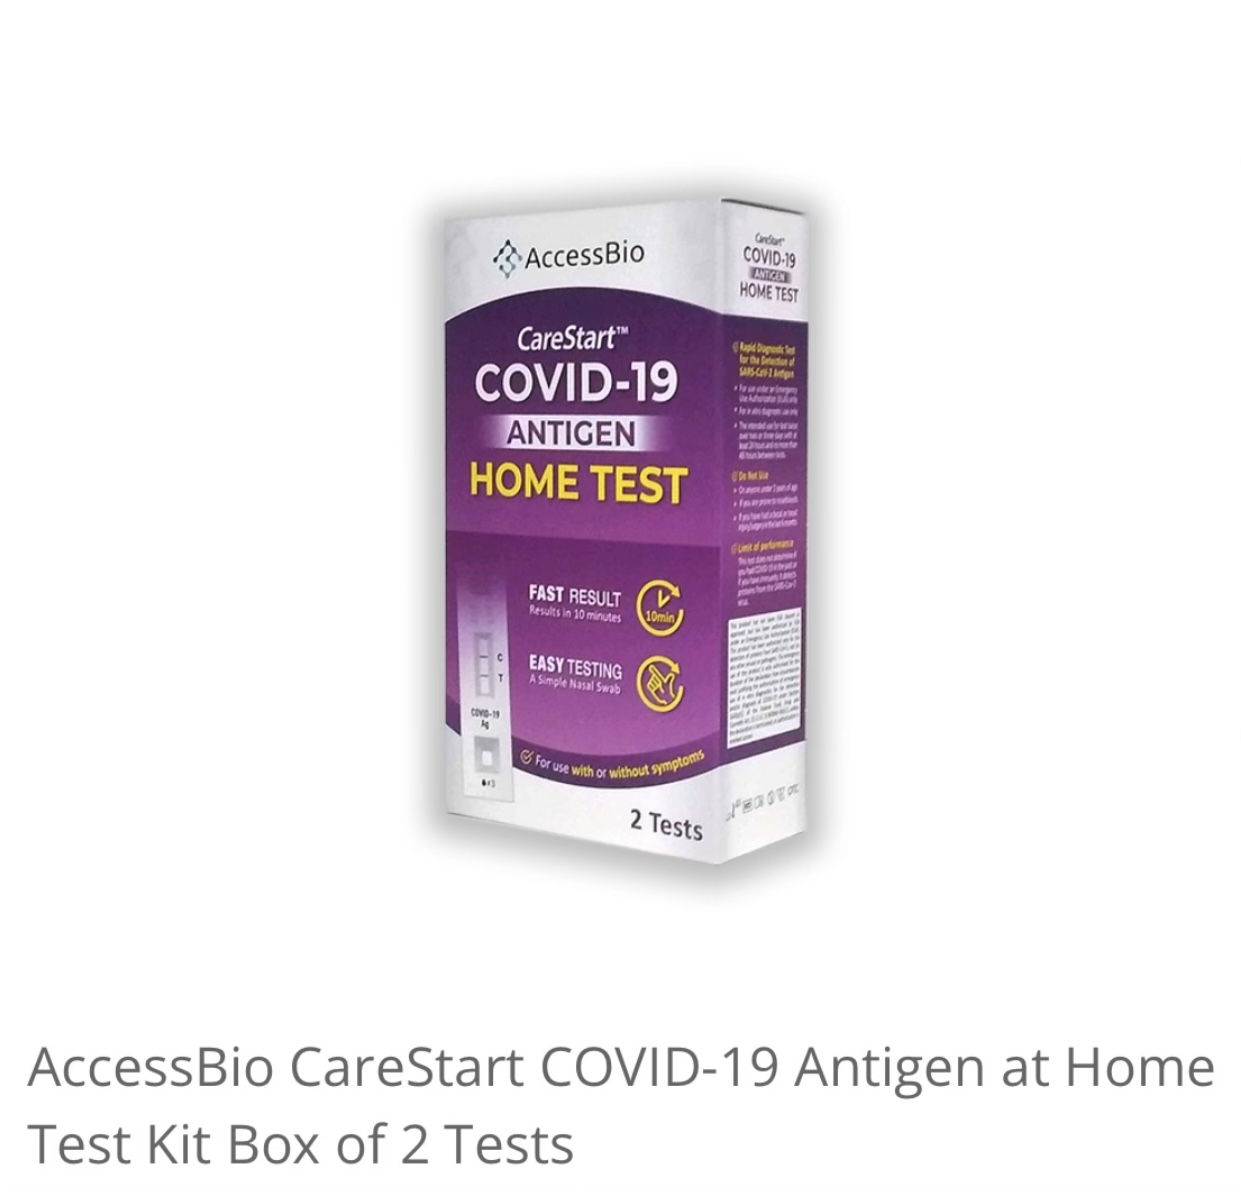 AccessBio CareStart COVID-19 Home Test Kit